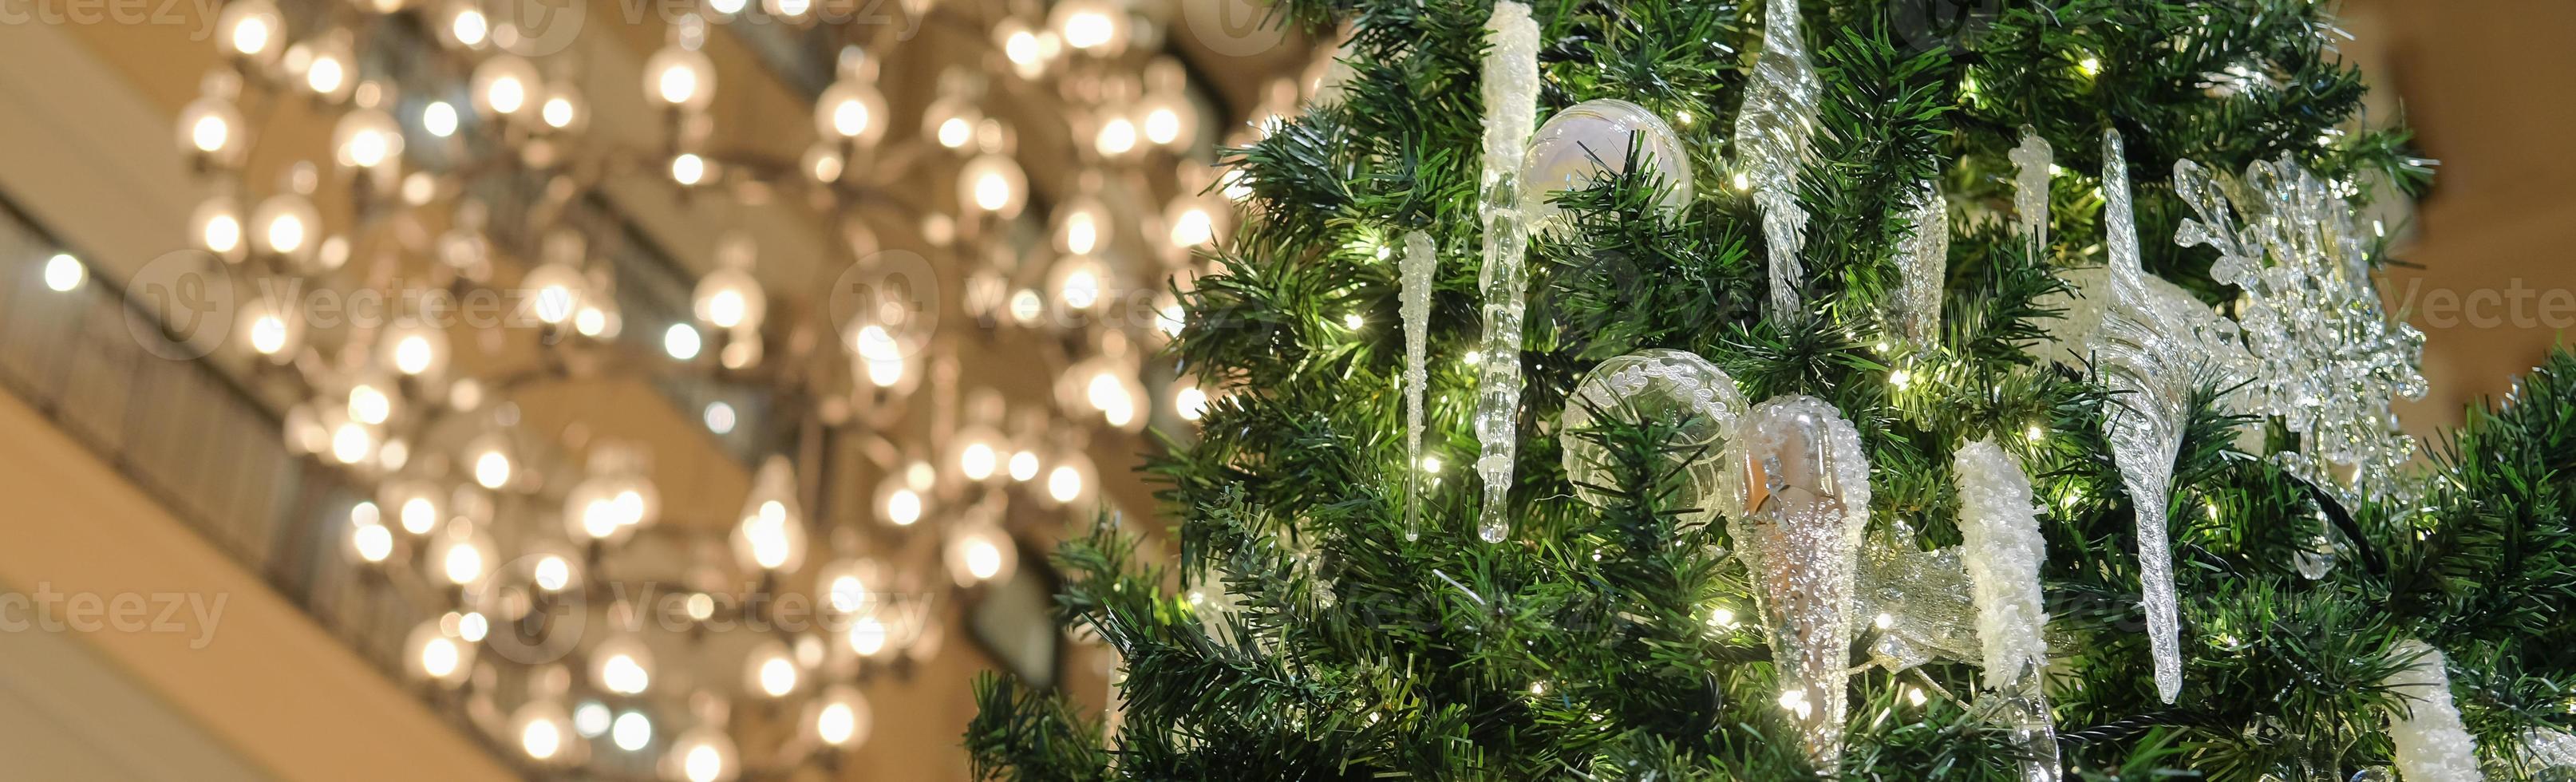 weihnachtsbaum festliche dekoration innengebäude auf unschärfelicht. Verwendung für Feiern, Banner oder Social-Media-Cover. selektiver Fokus. foto